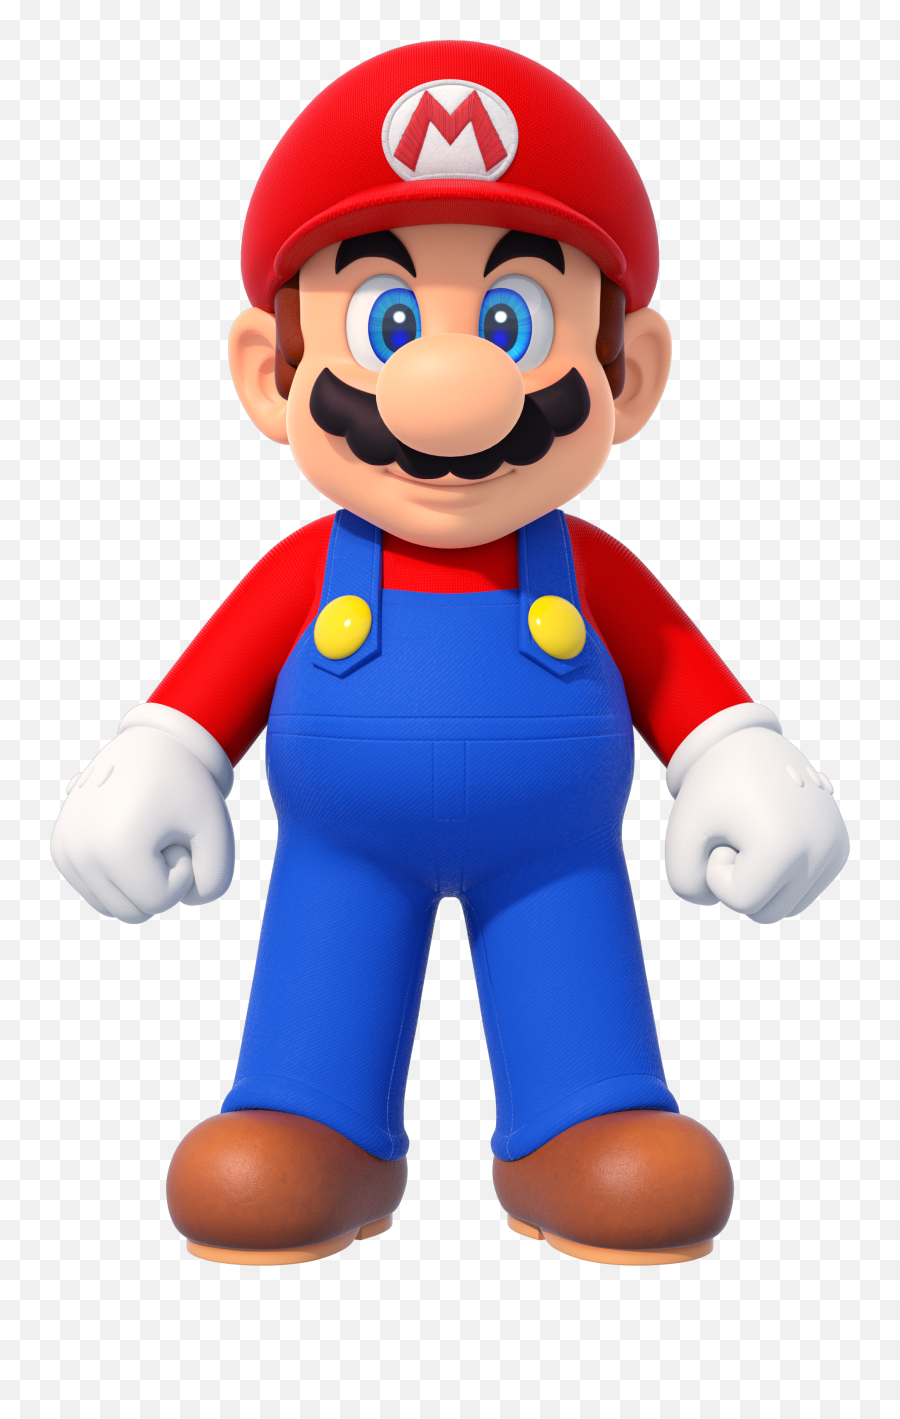 Imagenes De Mario Bros - New Super Mario Bros Wii Render Png,Mario Png